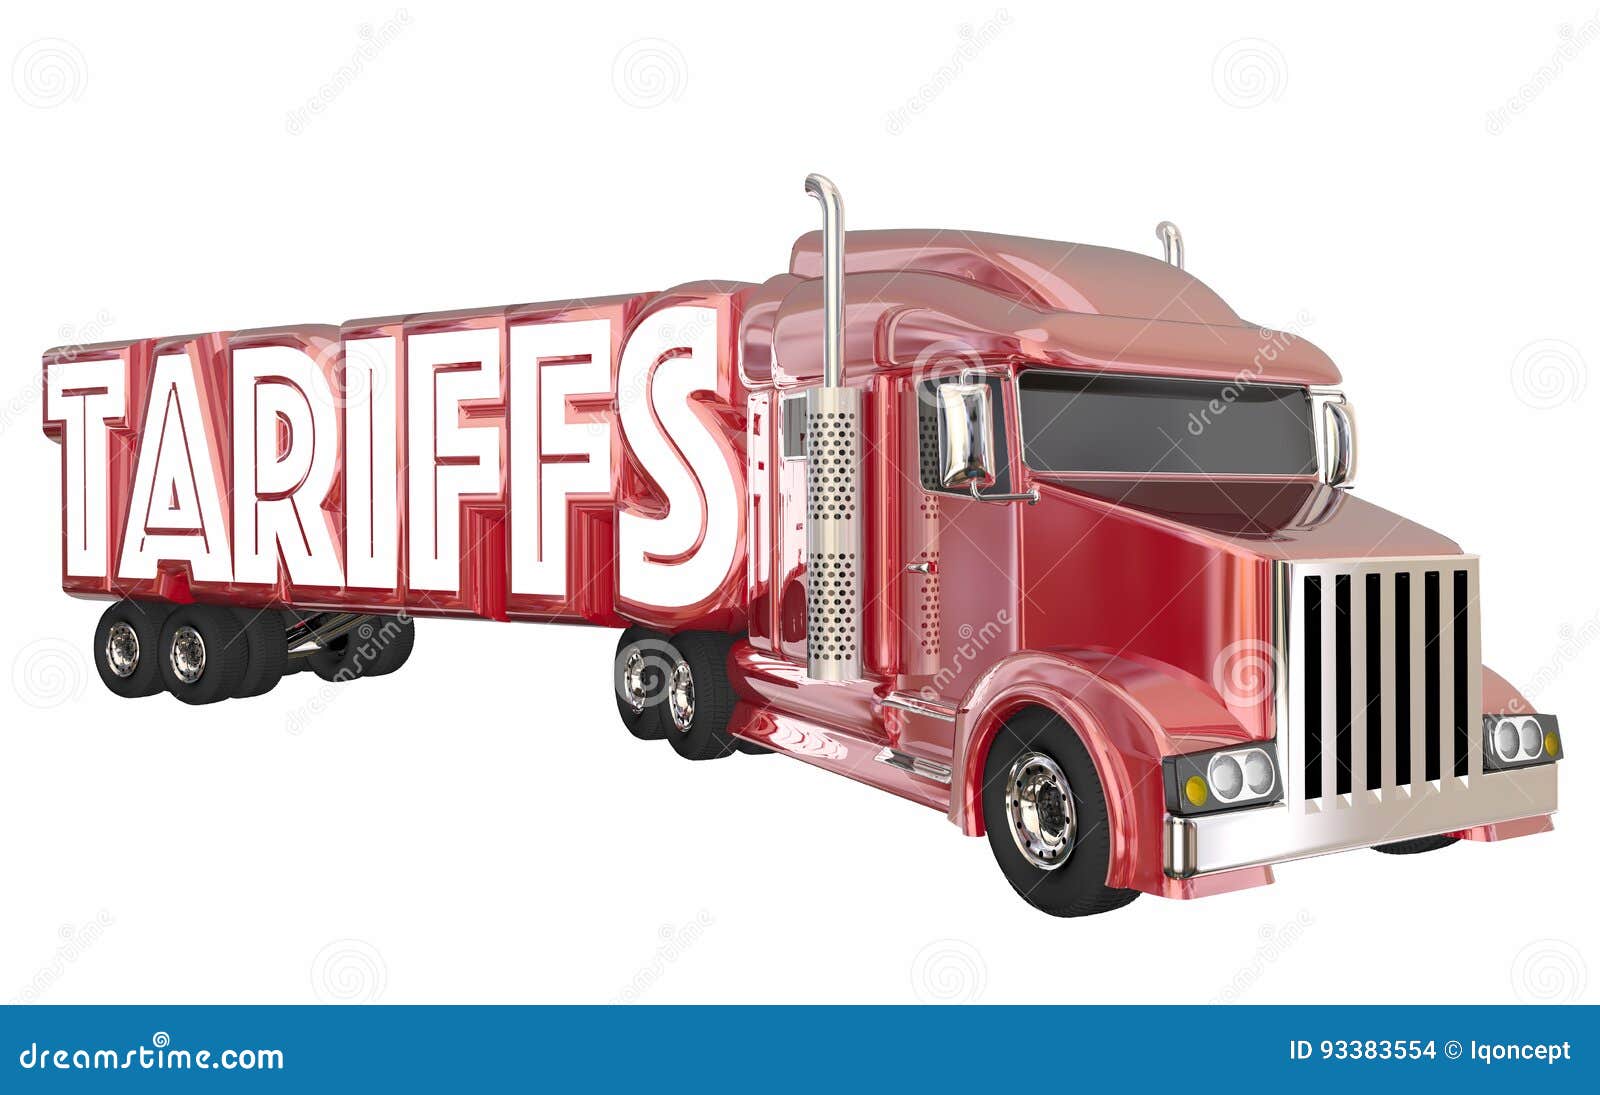 tariffs truck international trade